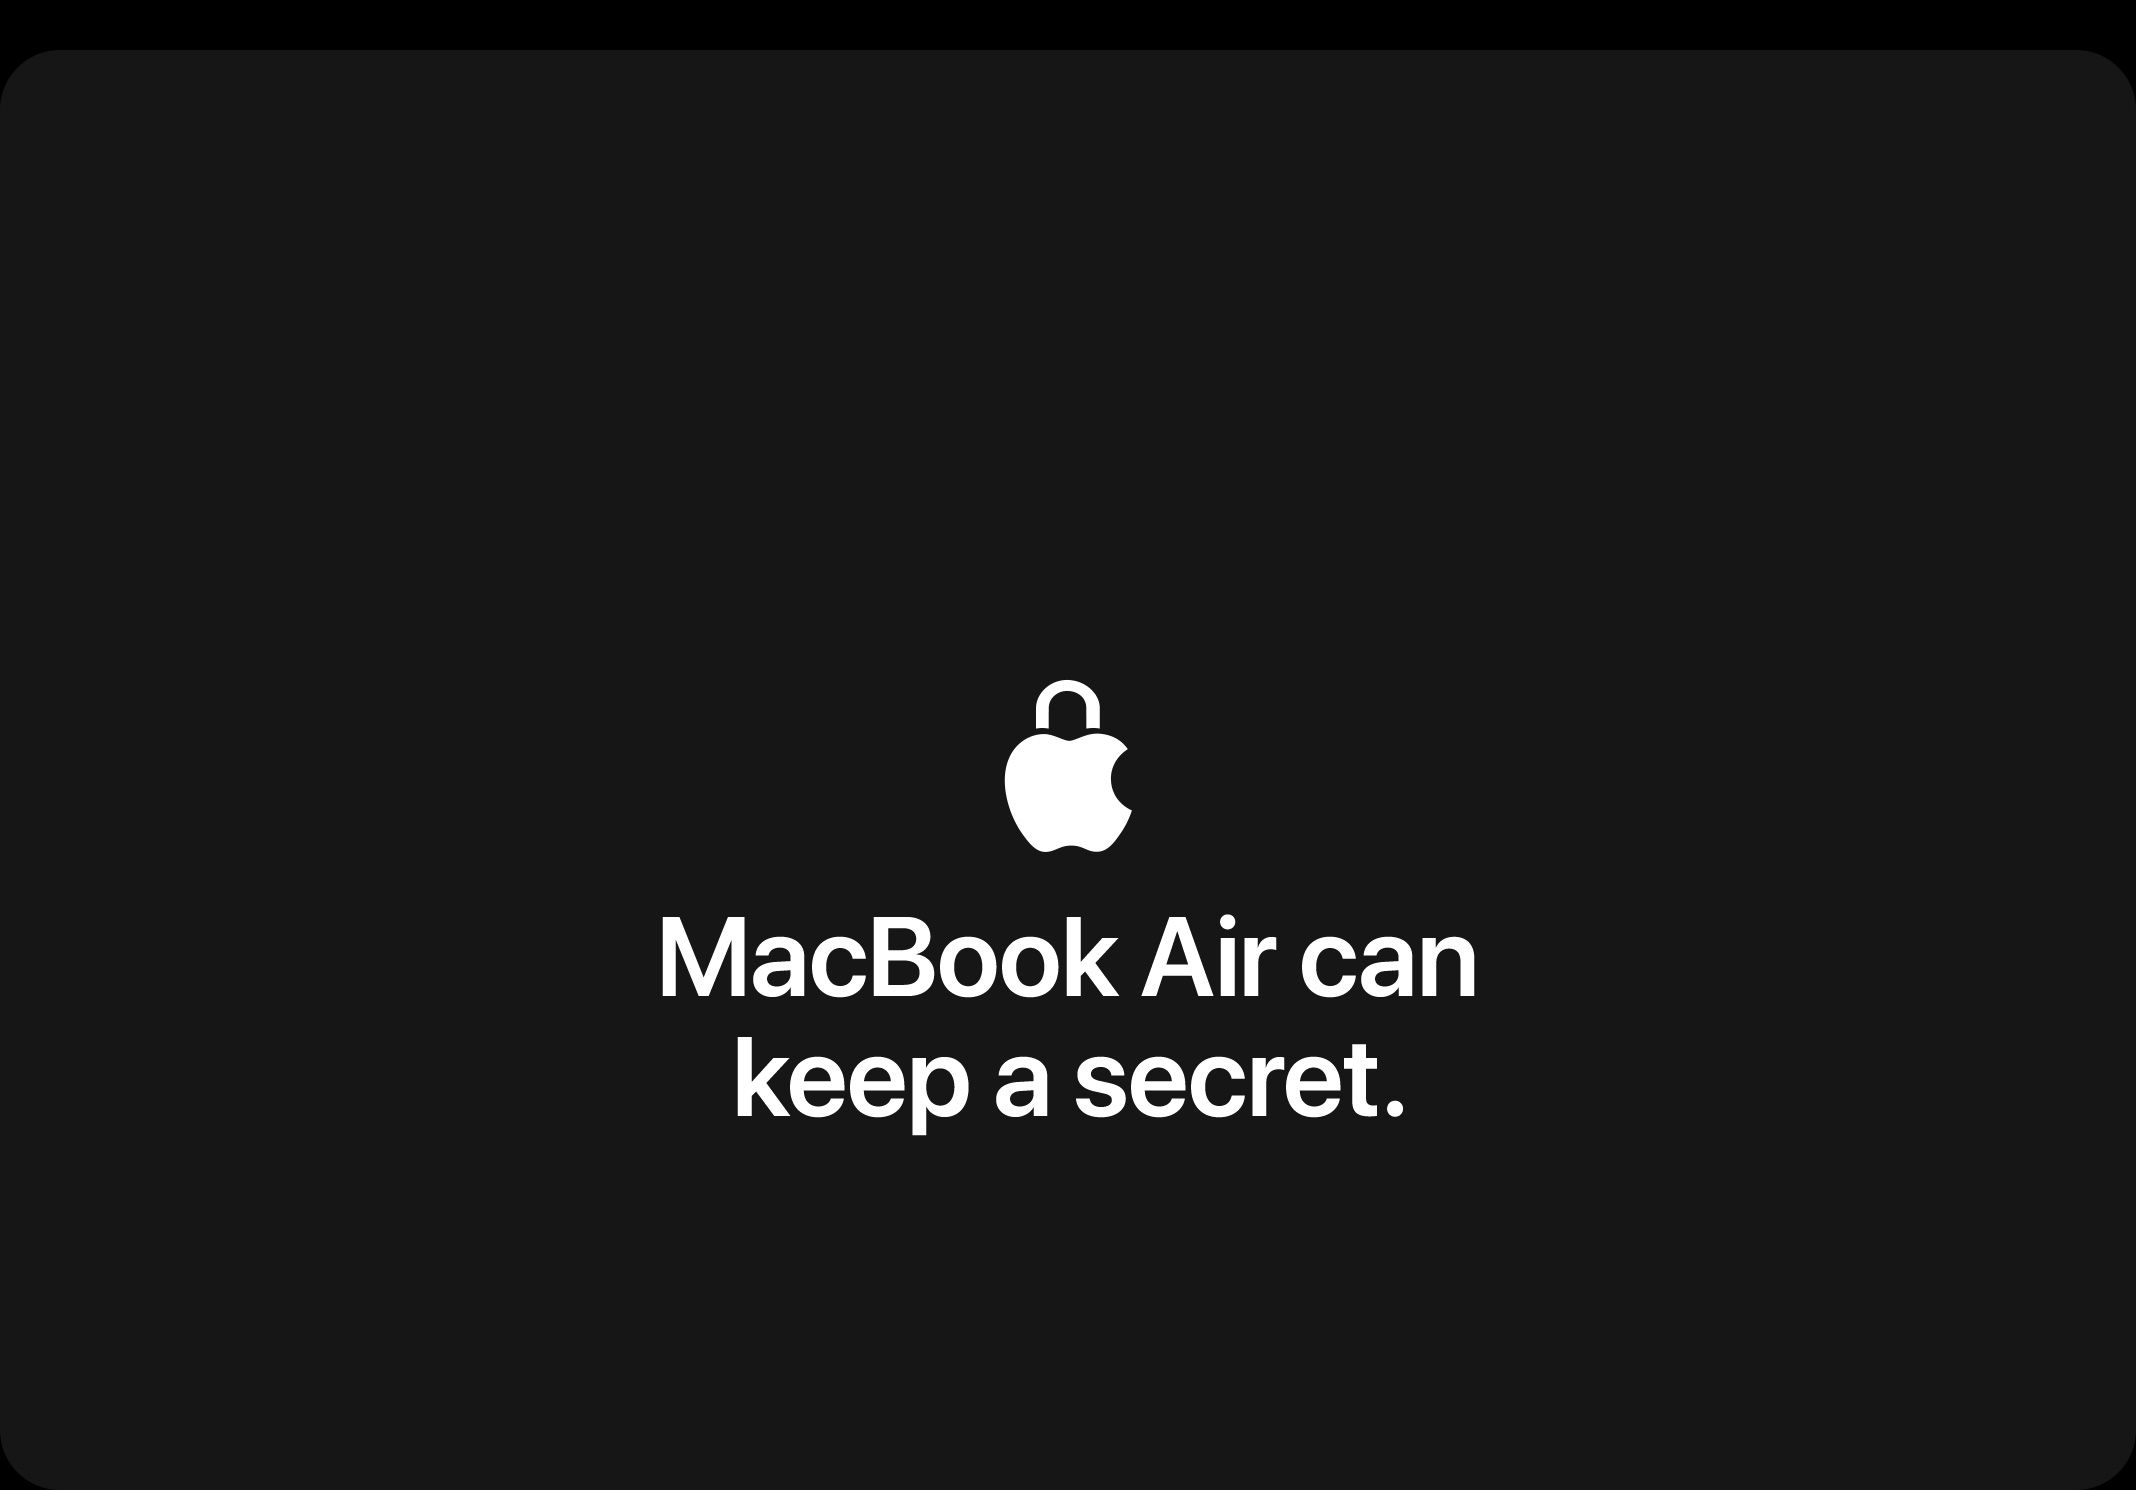 Macbook Air can keep a secret